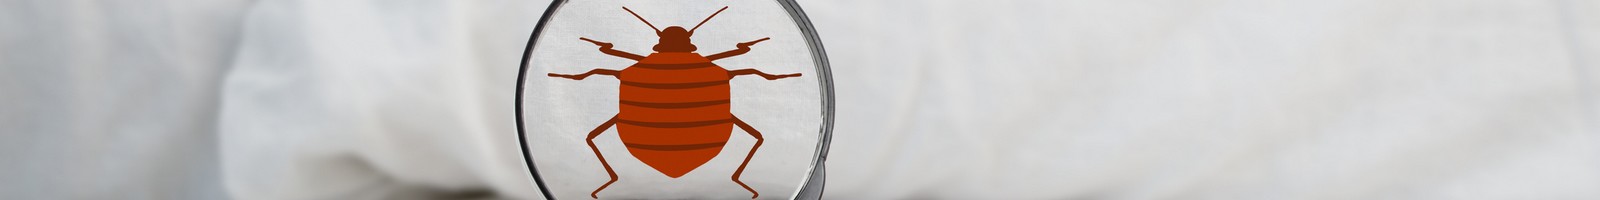 Badbugs.fr crée la première assurance contre les punaises de lit